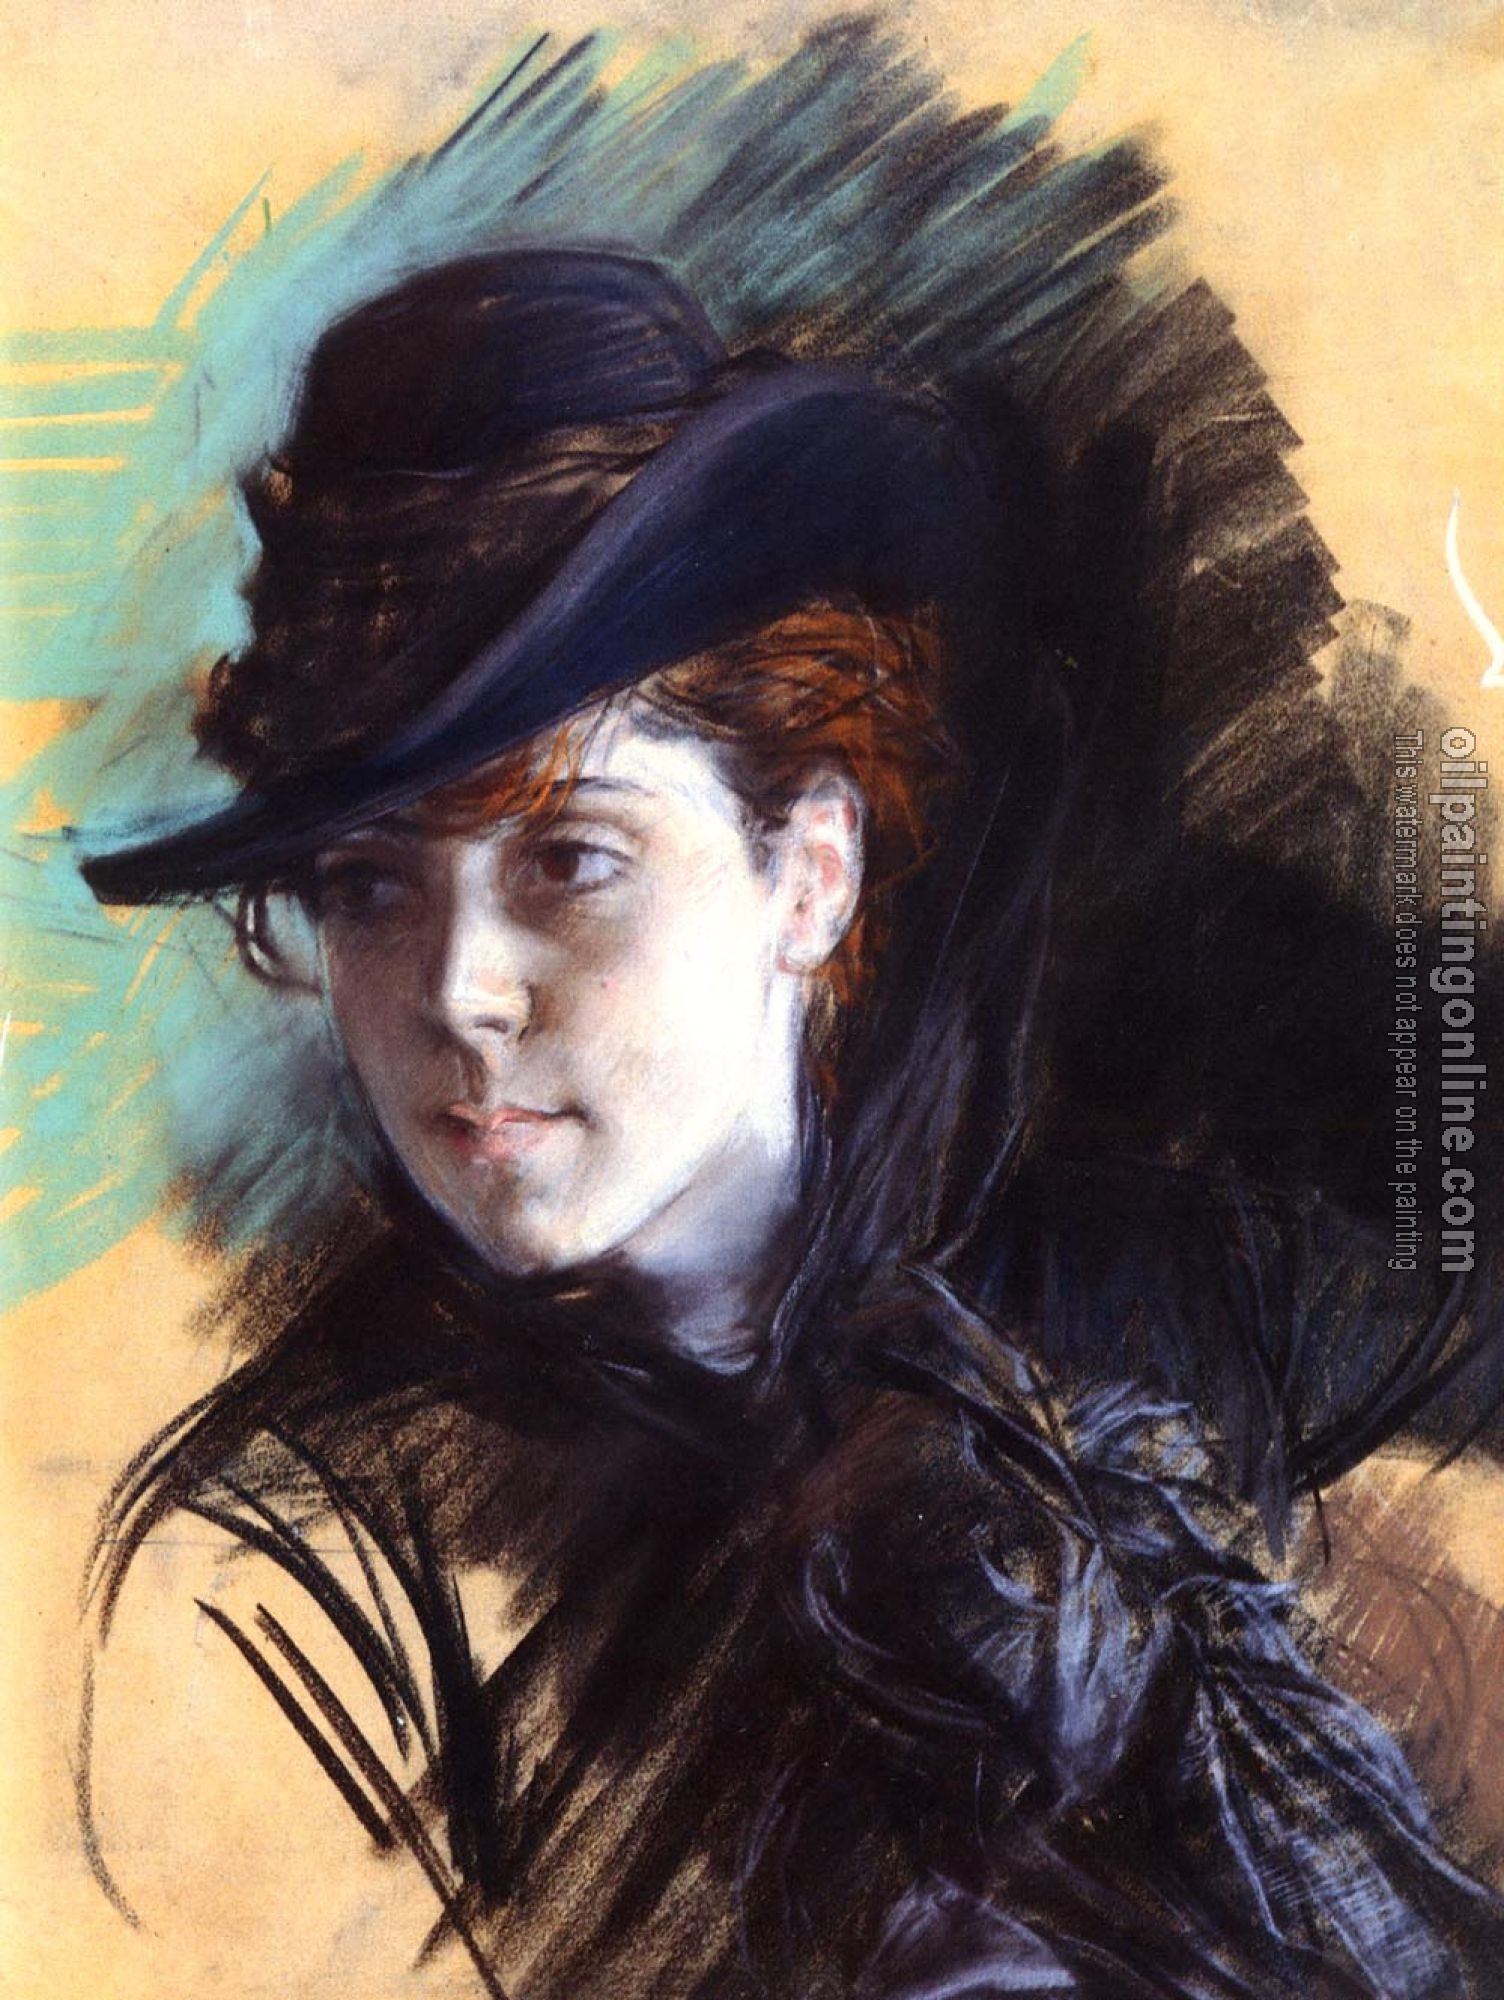 Giovanni Boldini - Girl In A Black Hat